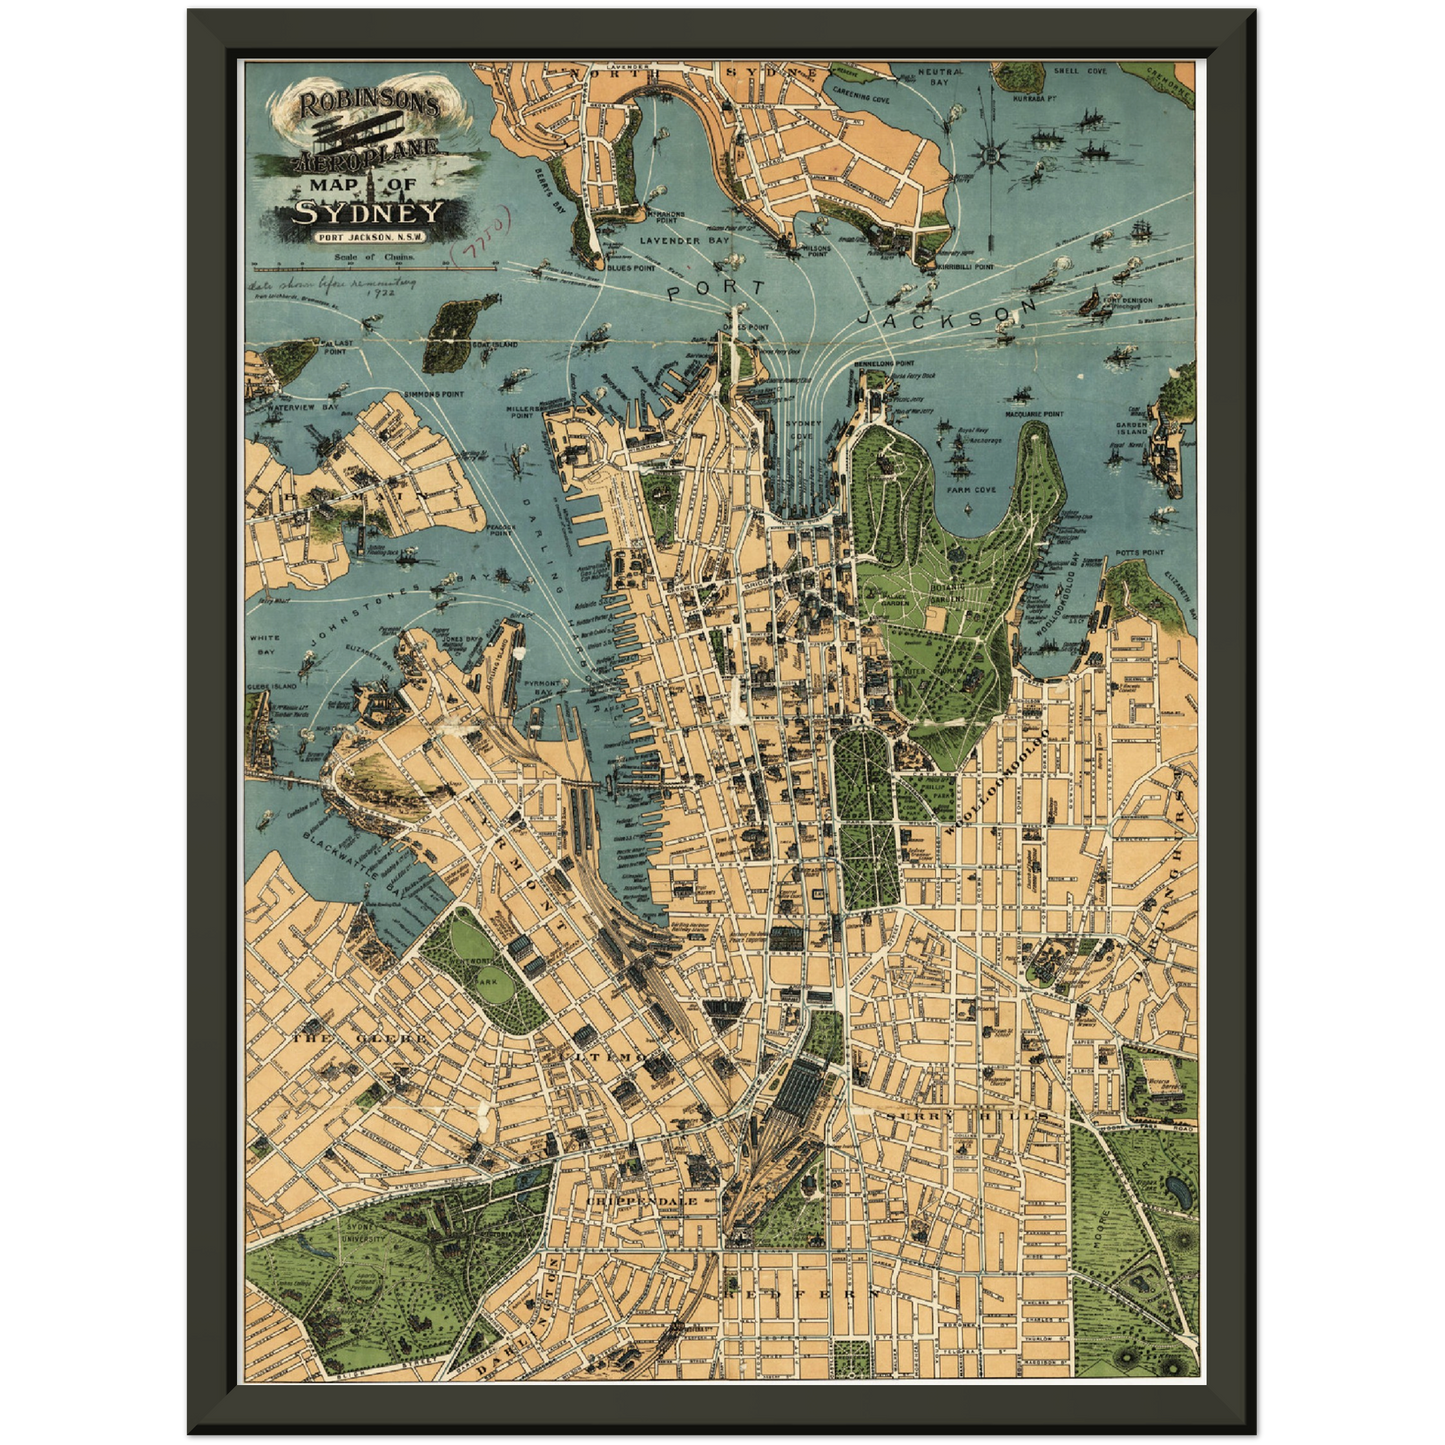 Historischer Stadtplan Sydney um 1922